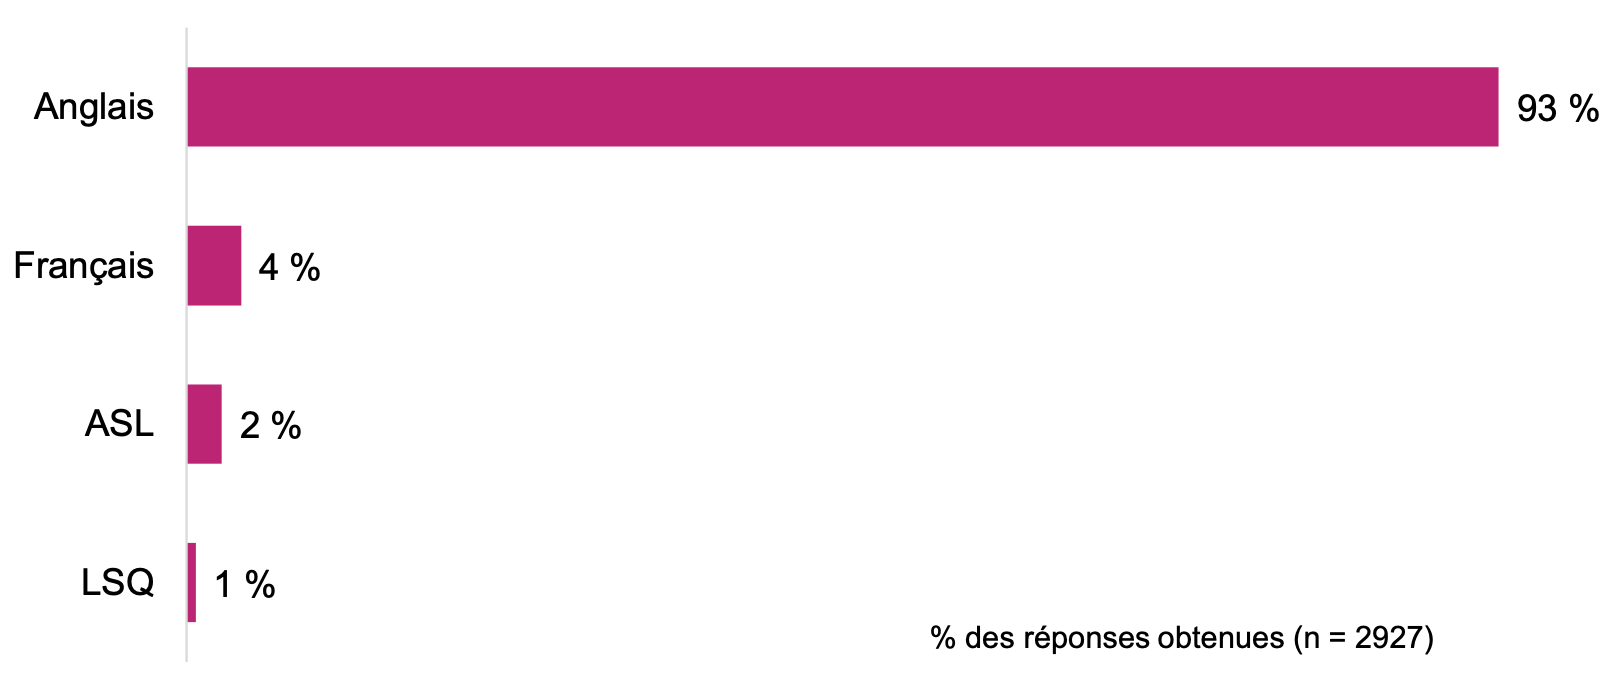 L'image s'agit d'un diagramme à barres qui représente dans quelle langue les personnes ont participé au sondage.